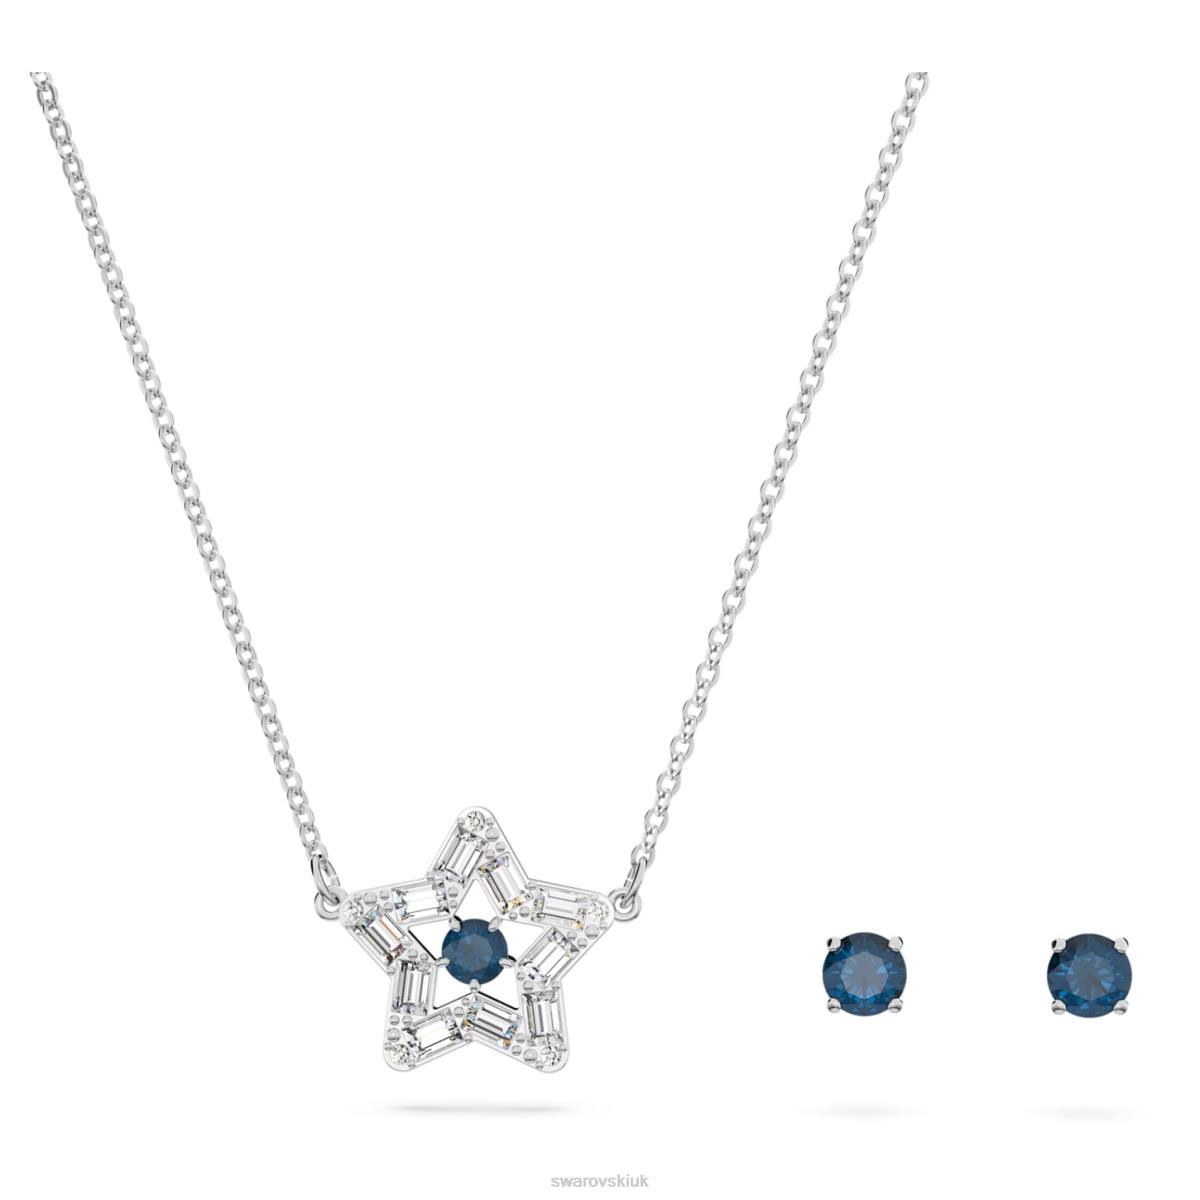 Jewelry Swarovski Stella set Mixed cuts, Star, Blue, Rhodium plated 48JX408